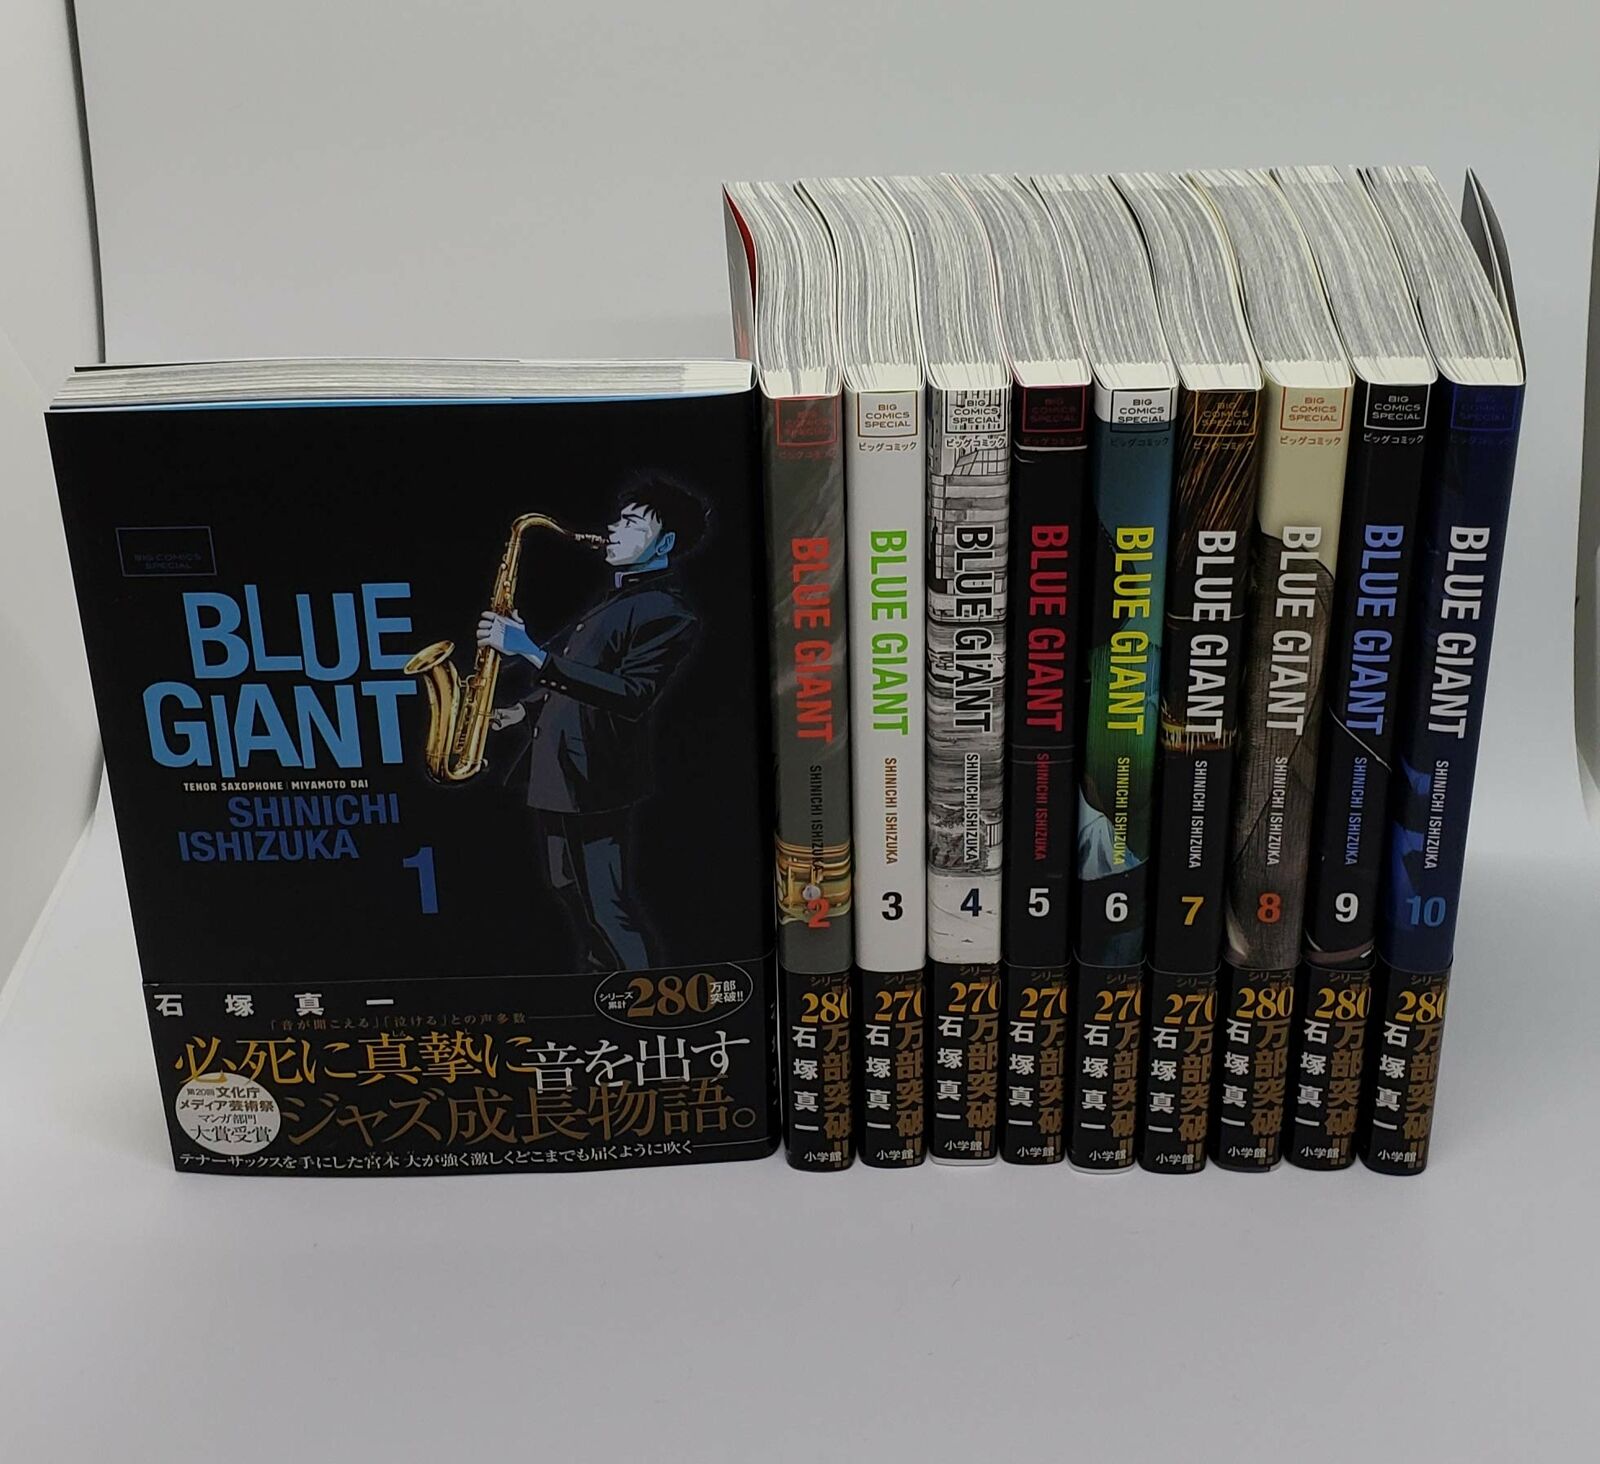 Manga BLUE GIANT VOL.1-10 Comics Complete Set